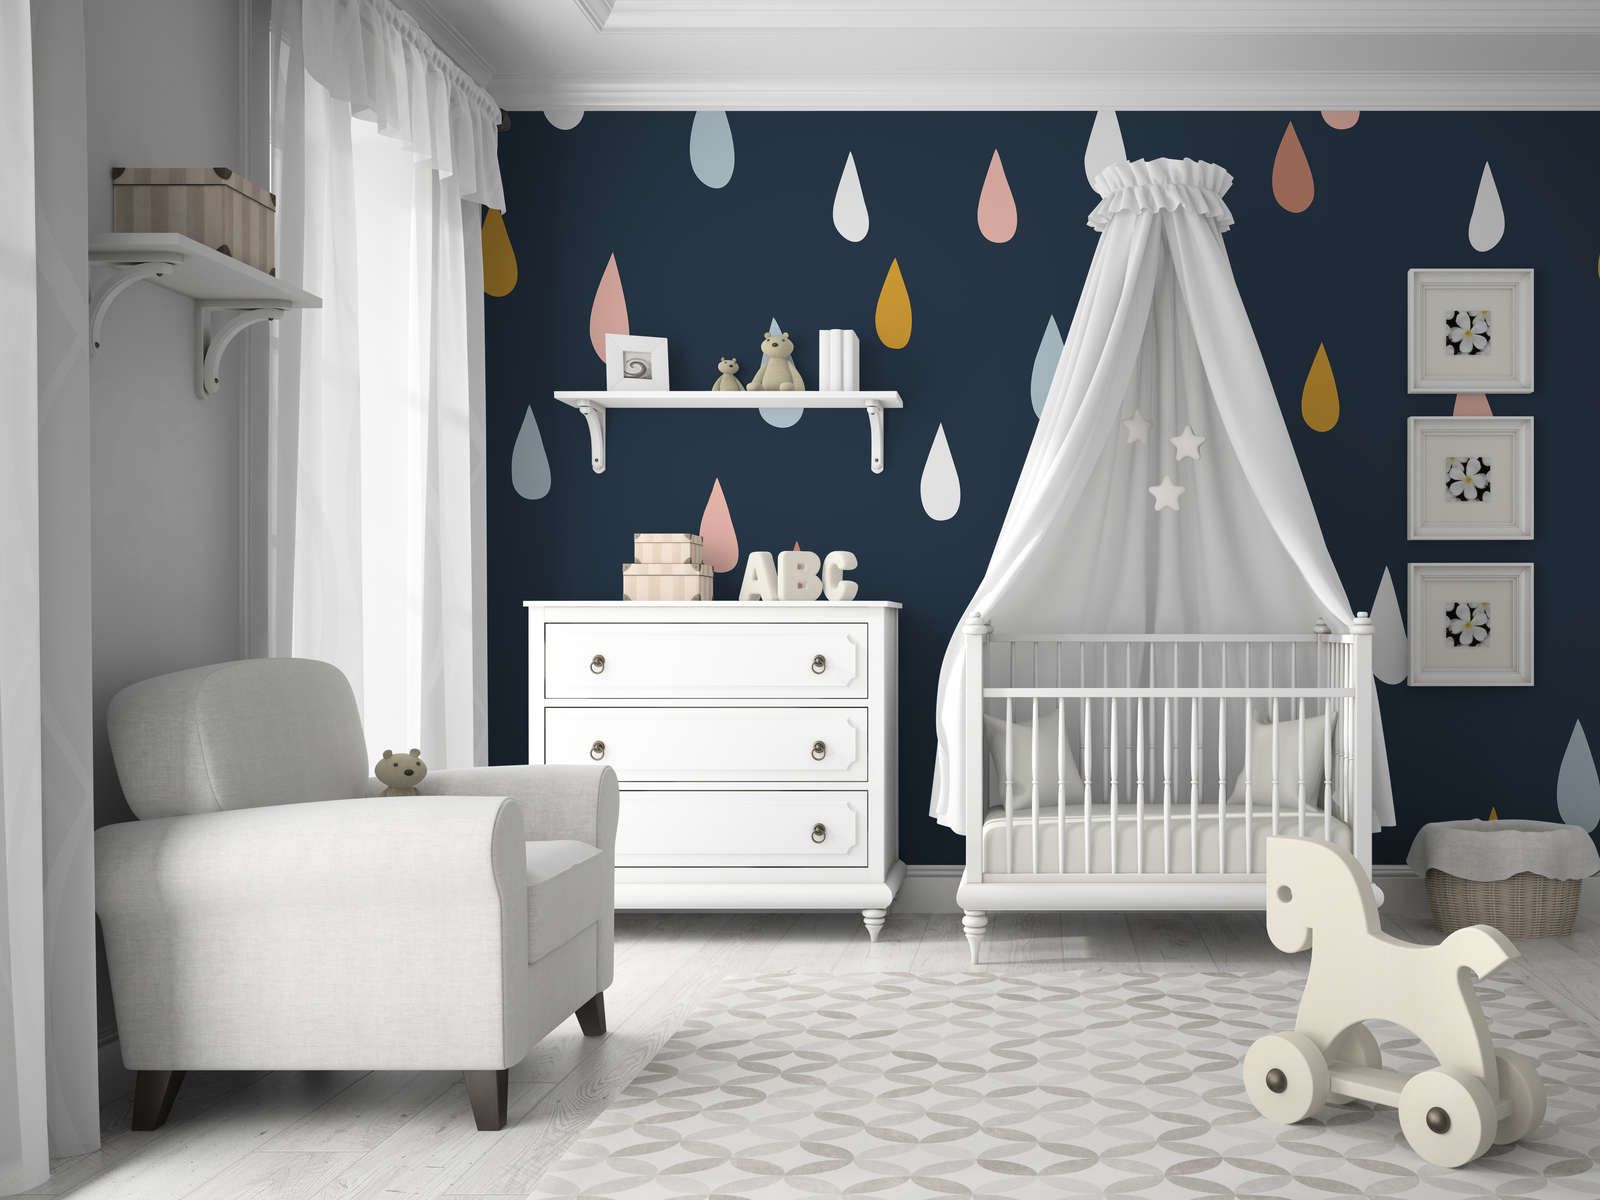             Papel pintado fotográfico para habitación infantil con gotas de colores - Material sin tejer liso y ligeramente brillante
        